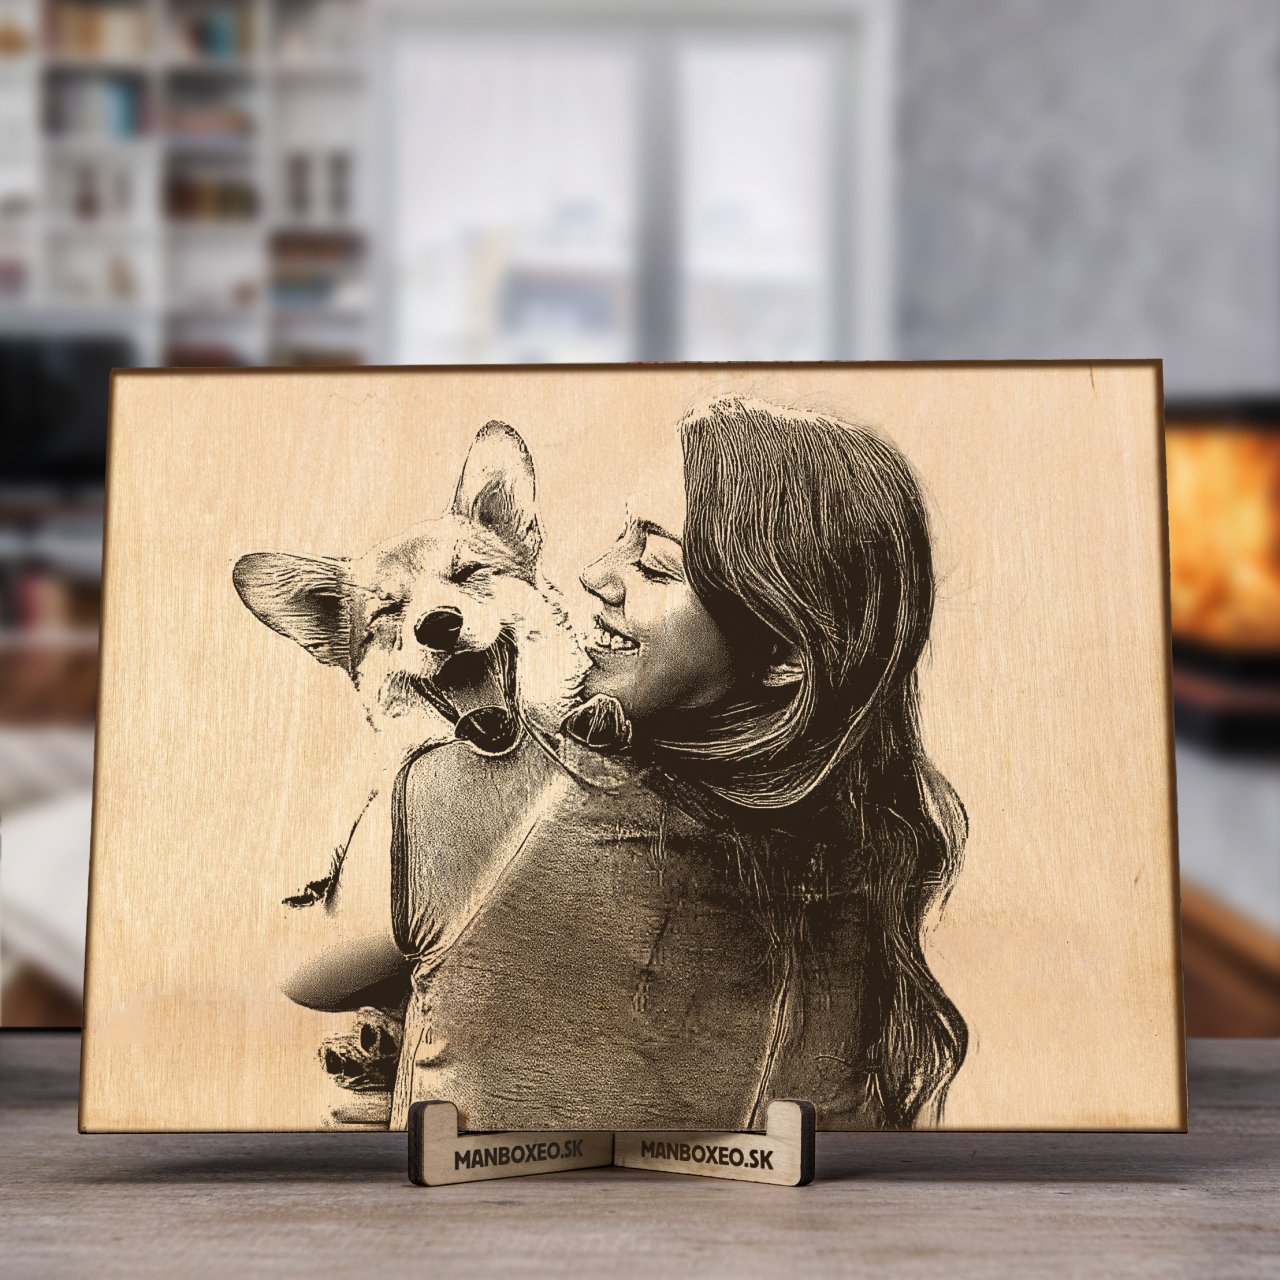 Fotka na dřevo - Domácí mazlíček A4 (220 x 310 mm)